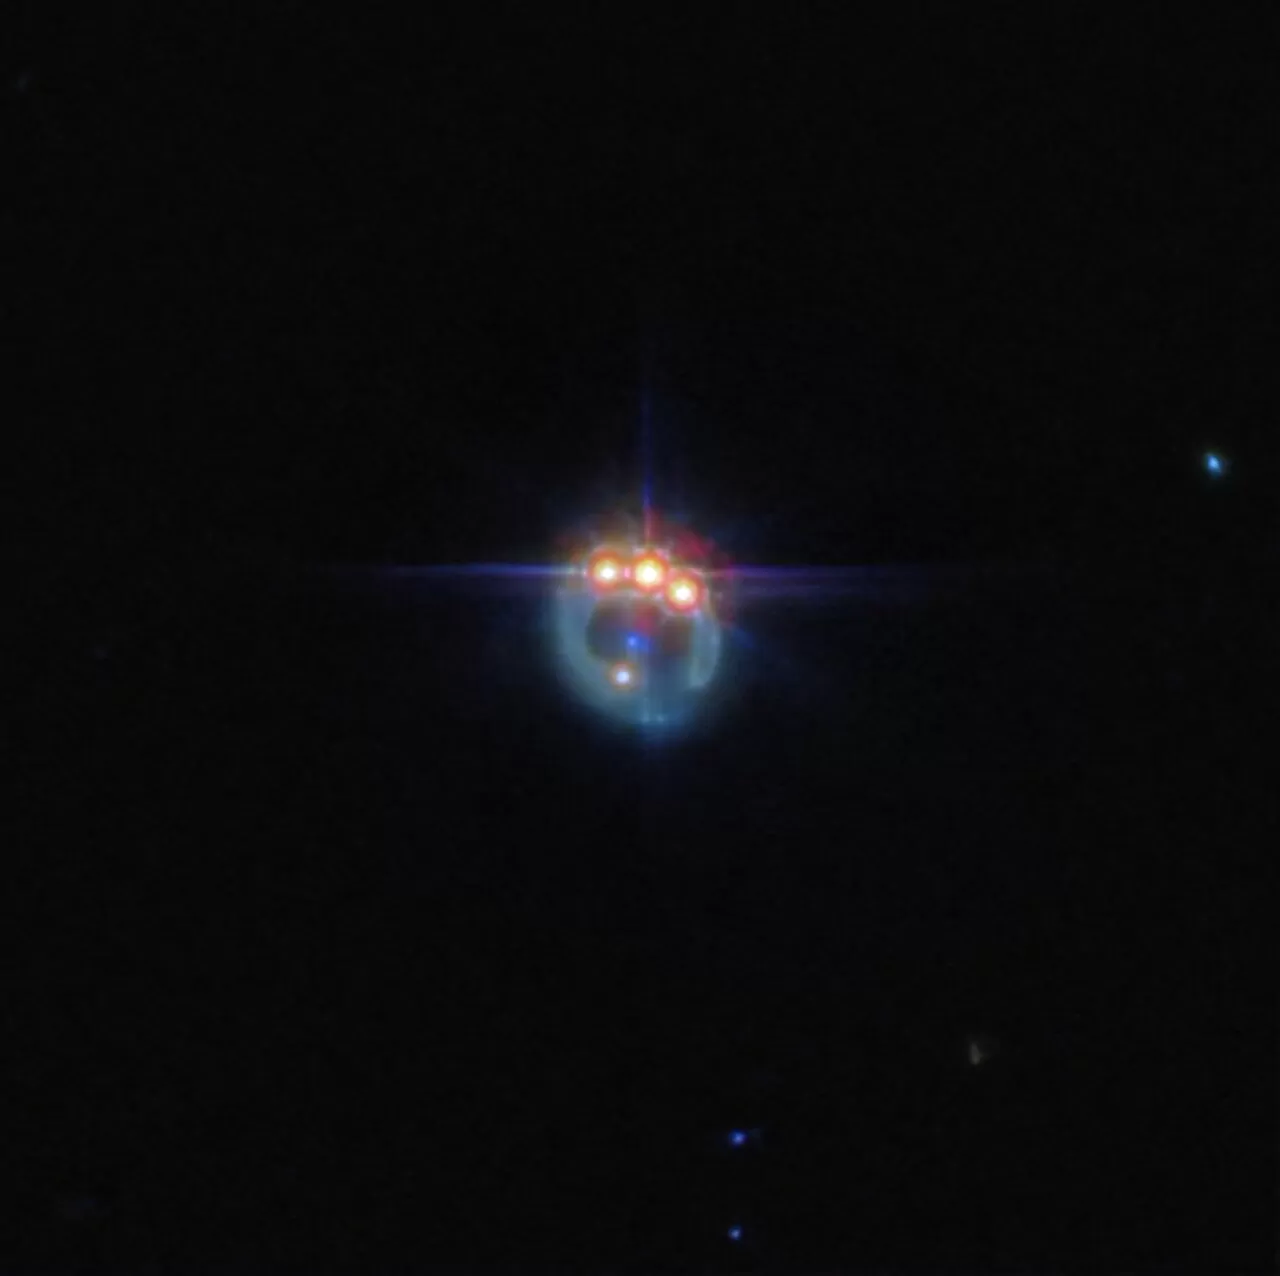 Fotografija galaksije iskrivljene gravitacijskom lećom u prigušeni prsten. Na vrhu prstena nalaze se tri vrlo svijetle točke s difrakcijskim šiljcima koji se protežu iz njih, smještene jedna pored druge: ovo su kopije jednog kvazara u lećastoj galaksiji, duplicirane gravitacijskom lećom. U središtu prstena, eliptična galaksija koja vrši lećenje pojavljuje se kao mala plava točka. Pozadina je crna i prazna. Kredit: ESA/Webb, NASA & CSA, A. Nierenberg.